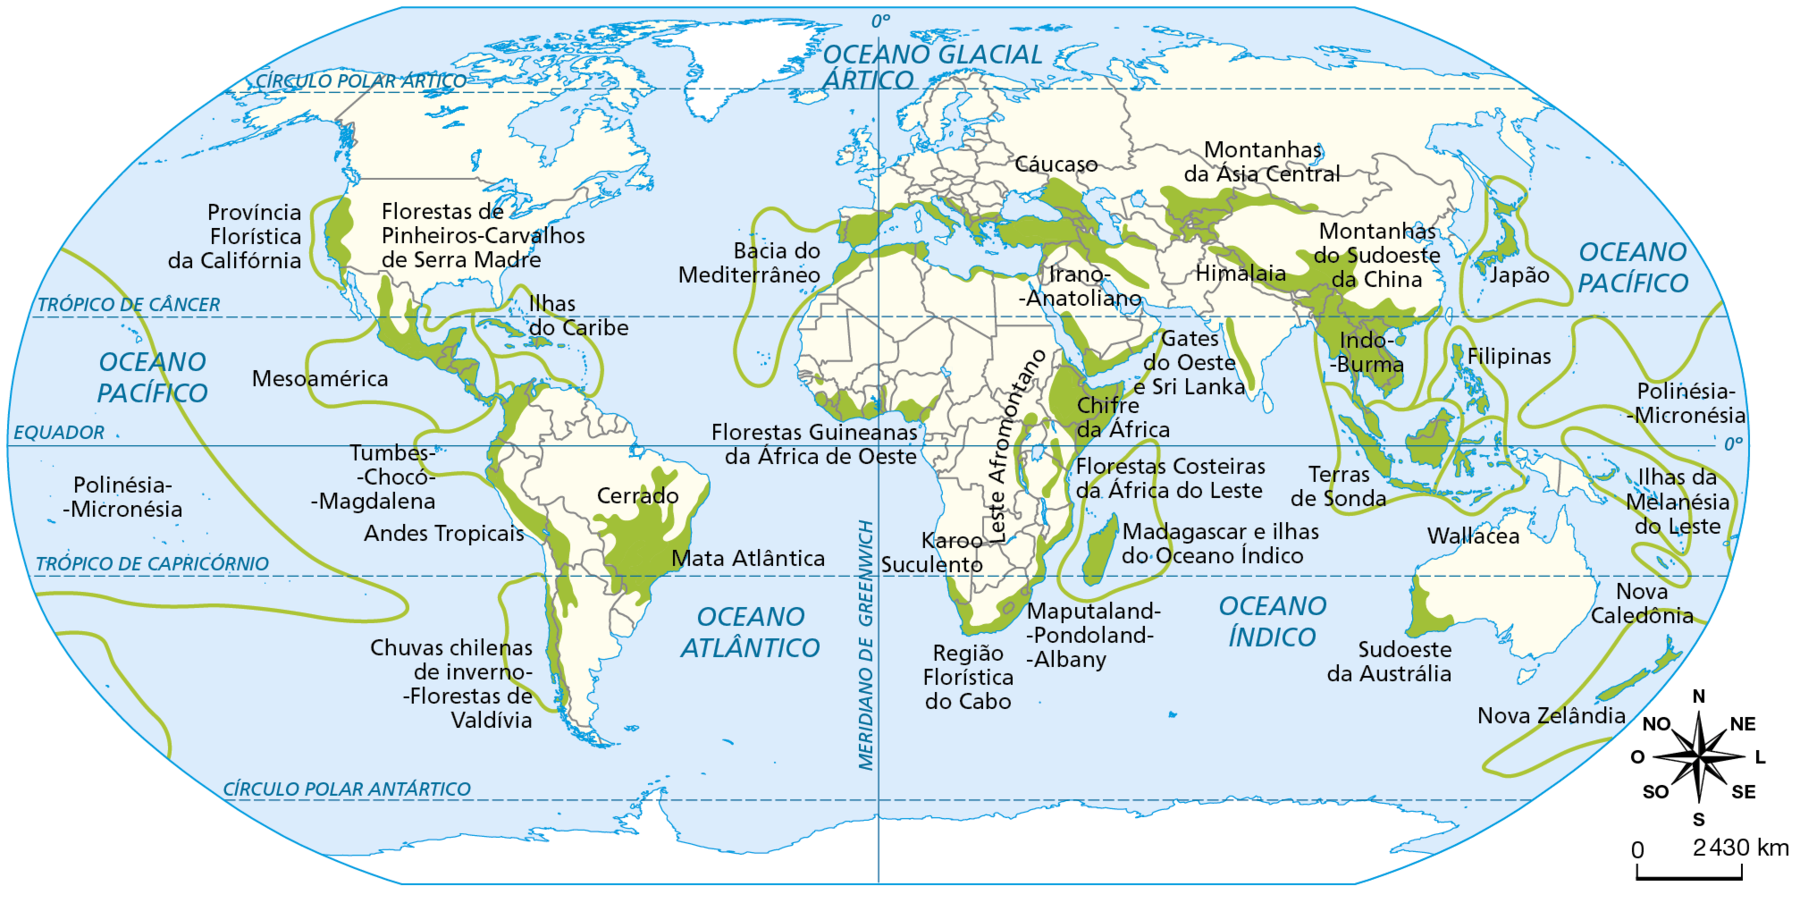 Mapa. Planisfério: biodiversidade ameaçada, 2016. 
Planisfério mostrando as áreas com biodiversidade ameaçada, tanto nos continentes quanto nos oceanos.
Áreas com biodiversidade ameaçada no centro e no litoral do Brasil (cerrado e mata atlântica).
Áreas com biodiversidade ameaçada no oeste da América do Sul (chuvas chilenas de inverno; florestas de Valdívia; Tumbes-Chocó-Magdalena; Andes tropicais). Áreas com biodiversidade ameaçada em toda a América Central, parte sul e central do México (Mesoamérica; Florestas de pinheiros-carvalhos de Serra Madre). Áreas com biodiversidade ameaçada na costa oeste dos Estados Unidos (província florística da Califórnia).
Áreas com biodiversidade ameaçada no extremo norte da África, parte de Portugal, Espanha, Itália e Bacia do Mediterrâneo.
Áreas com biodiversidade ameaçada em porções do Oeste da África (Florestas Guineanas da África de Oeste), no sul da África (Karoo Suculento, Região Florística do Cabo, Maputaland-Pondoland-Albany) e leste da África (Chifre da África, Florestas Costeiras da África do Leste, Leste Afromontano).
Áreas com biodiversidade ameaçada em Madagascar (Madagascar e Ilhas do Oceano Índico).
Áreas com biodiversidade ameaçada na região da Turquia e oeste do Irã (Irano-Anatoliano).
Áreas com biodiversidade ameaçada no sul do Oriente Médio.
Áreas com biodiversidade ameaçada na região da Geórgia e Armênia (Cáucaso).
Áreas com biodiversidade ameaçada na Ásia Central (montanhas da Ásia Central), na região do Himalaia, no oeste da China  China (Montanhas do Sudoeste da China) e Sudeste Asiático (Indo Burma, Terras de Sonda, Filipinas). Áreas com biodiversidade ameaçada no Japão. Áreas com biodiversidade ameaçada no oeste da Índia (Gates do Oeste e Siri Lanka).
Áreas com biodiversidade ameaçada no sudoeste da Austrália, Nova Zelândia, Nova Caledônea. Ilhas da melanésia do leste, Polinésia-Micronésia.
Áreas com biodiversidade ameaçada em forma de linhas sobre os oceanos pacífico, atlântico e índico.
Na parte inferior direita,  rosa dos ventos e escala de 0 a 2.430 quilômetros.